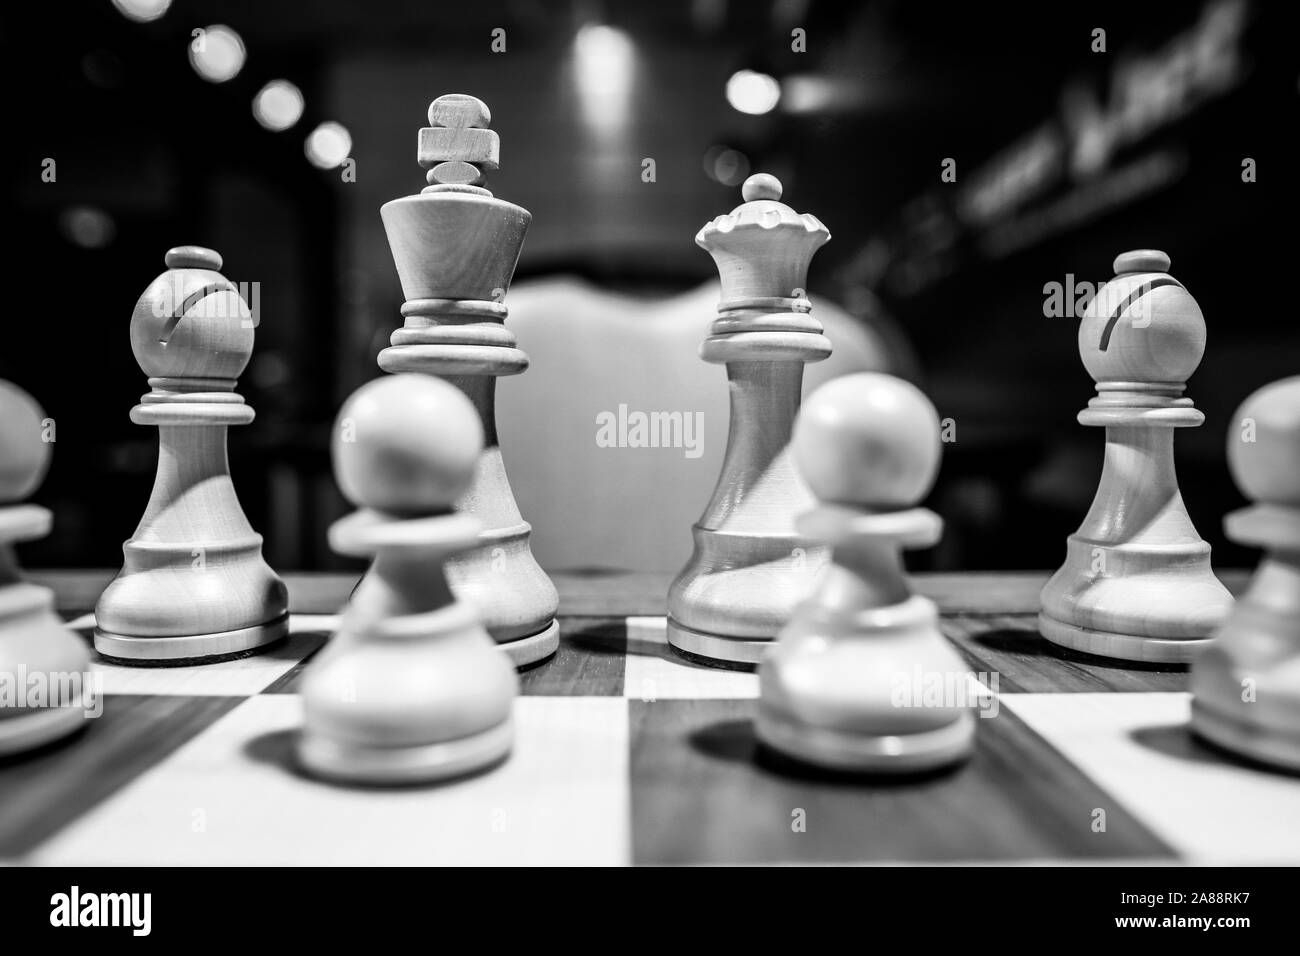 Profondeur de champ monochrome (selective focus) image avec pièces d'échecs en bois sur une table en bois avant une compétition professionnelle. Banque D'Images